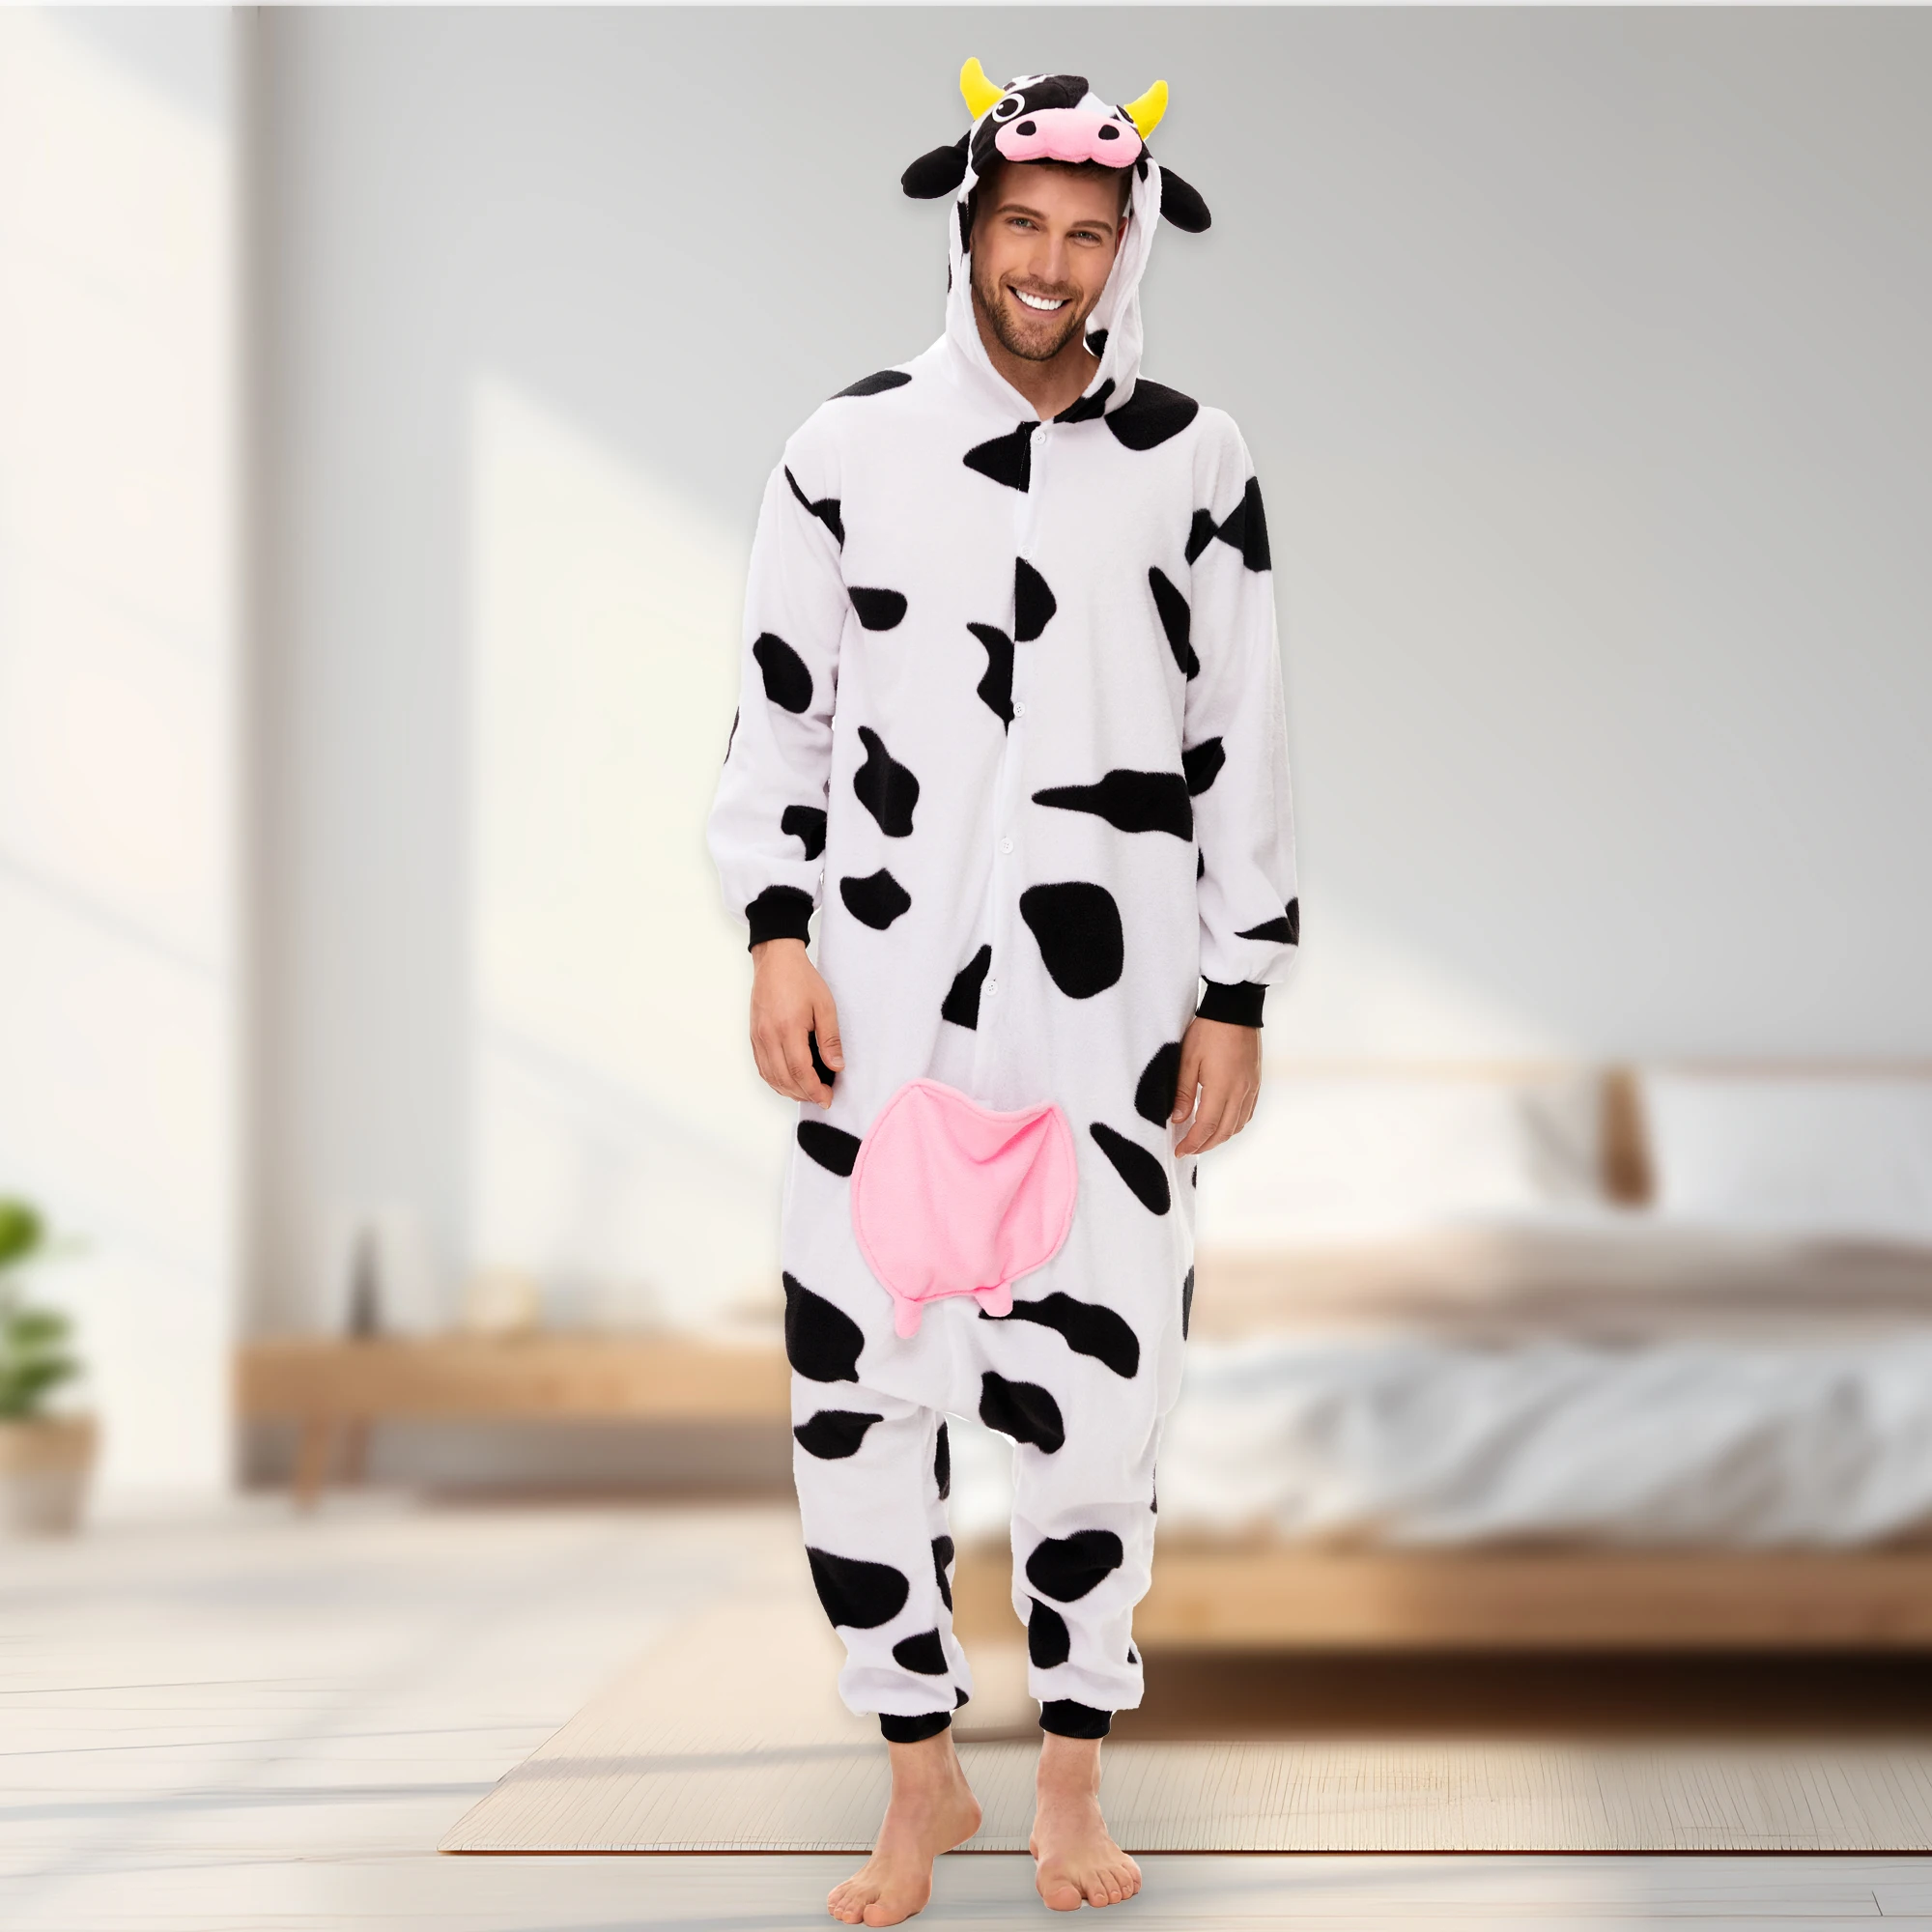 

Костюм коровы CANASOUR, цельная Пижама для взрослых мужчин, одежда для сна на Хэллоуин, Рождество, косплей